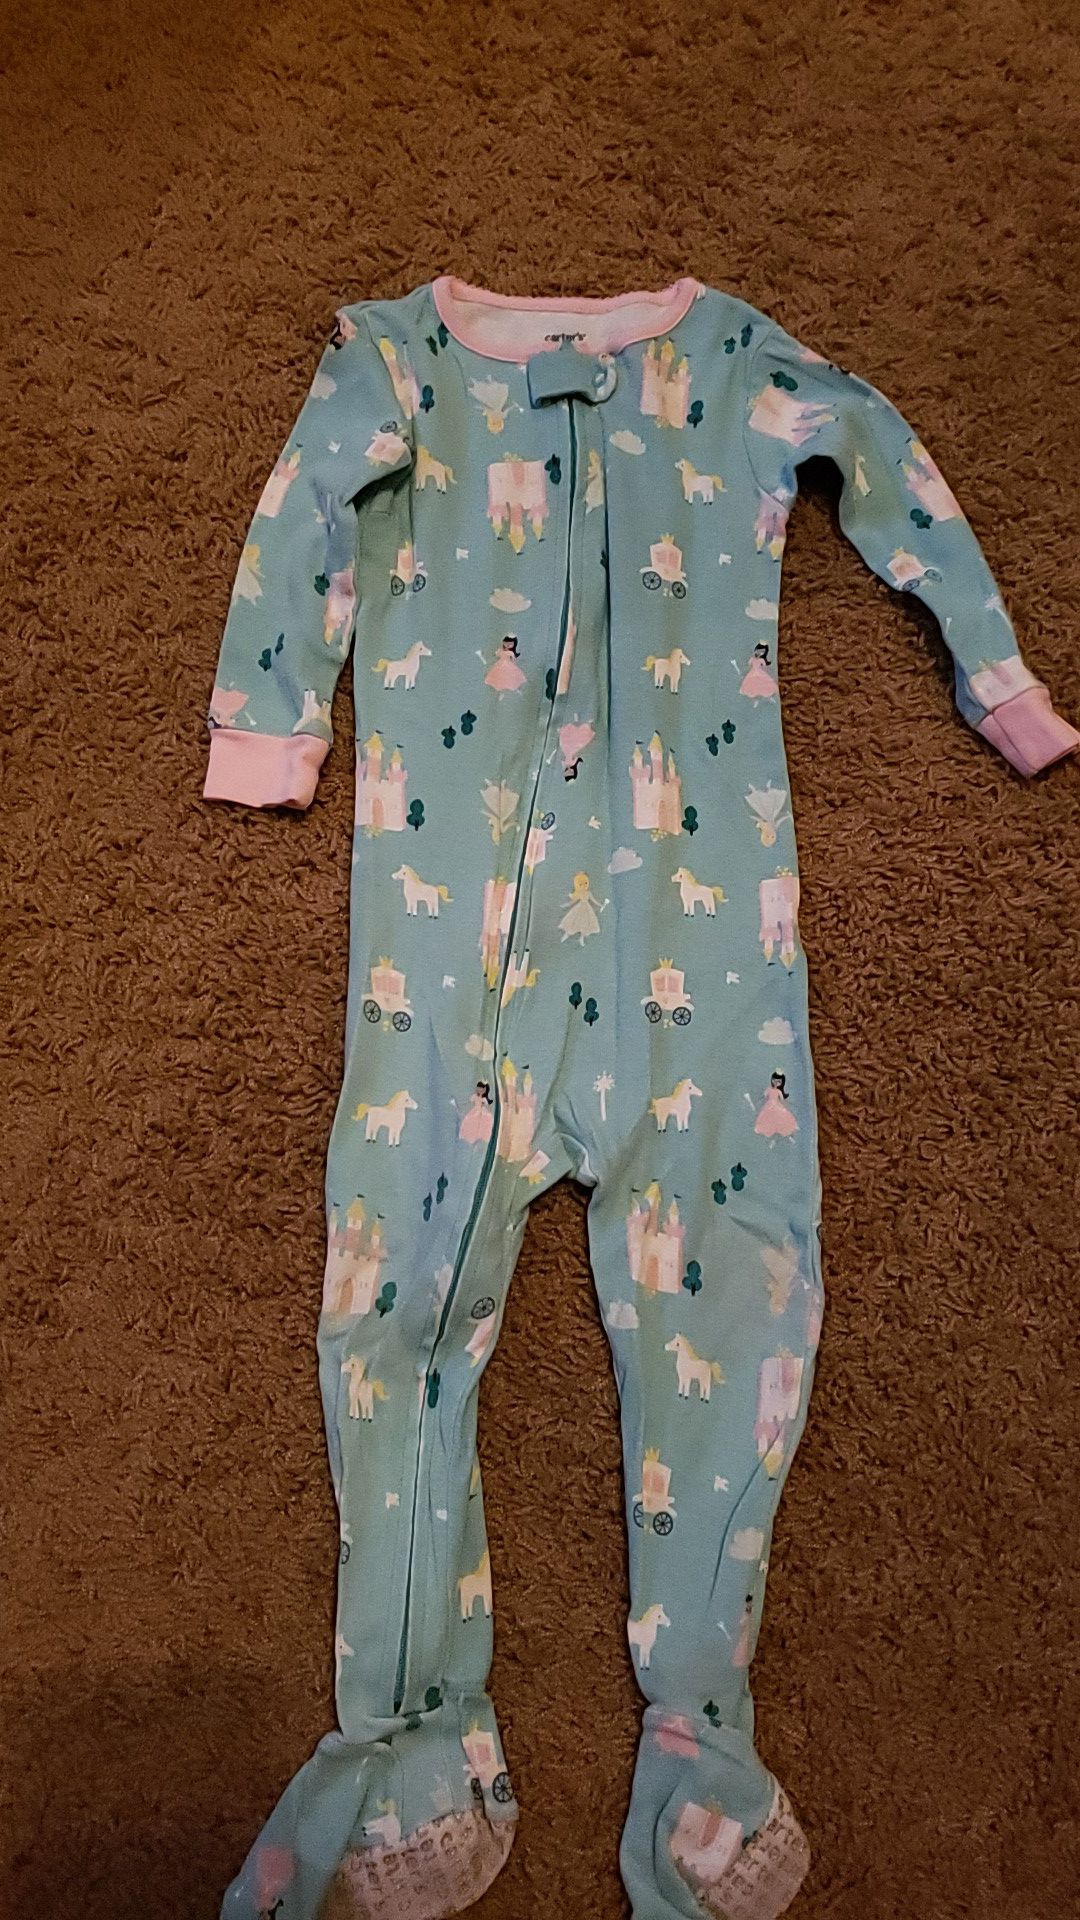 18 month princess pajamas